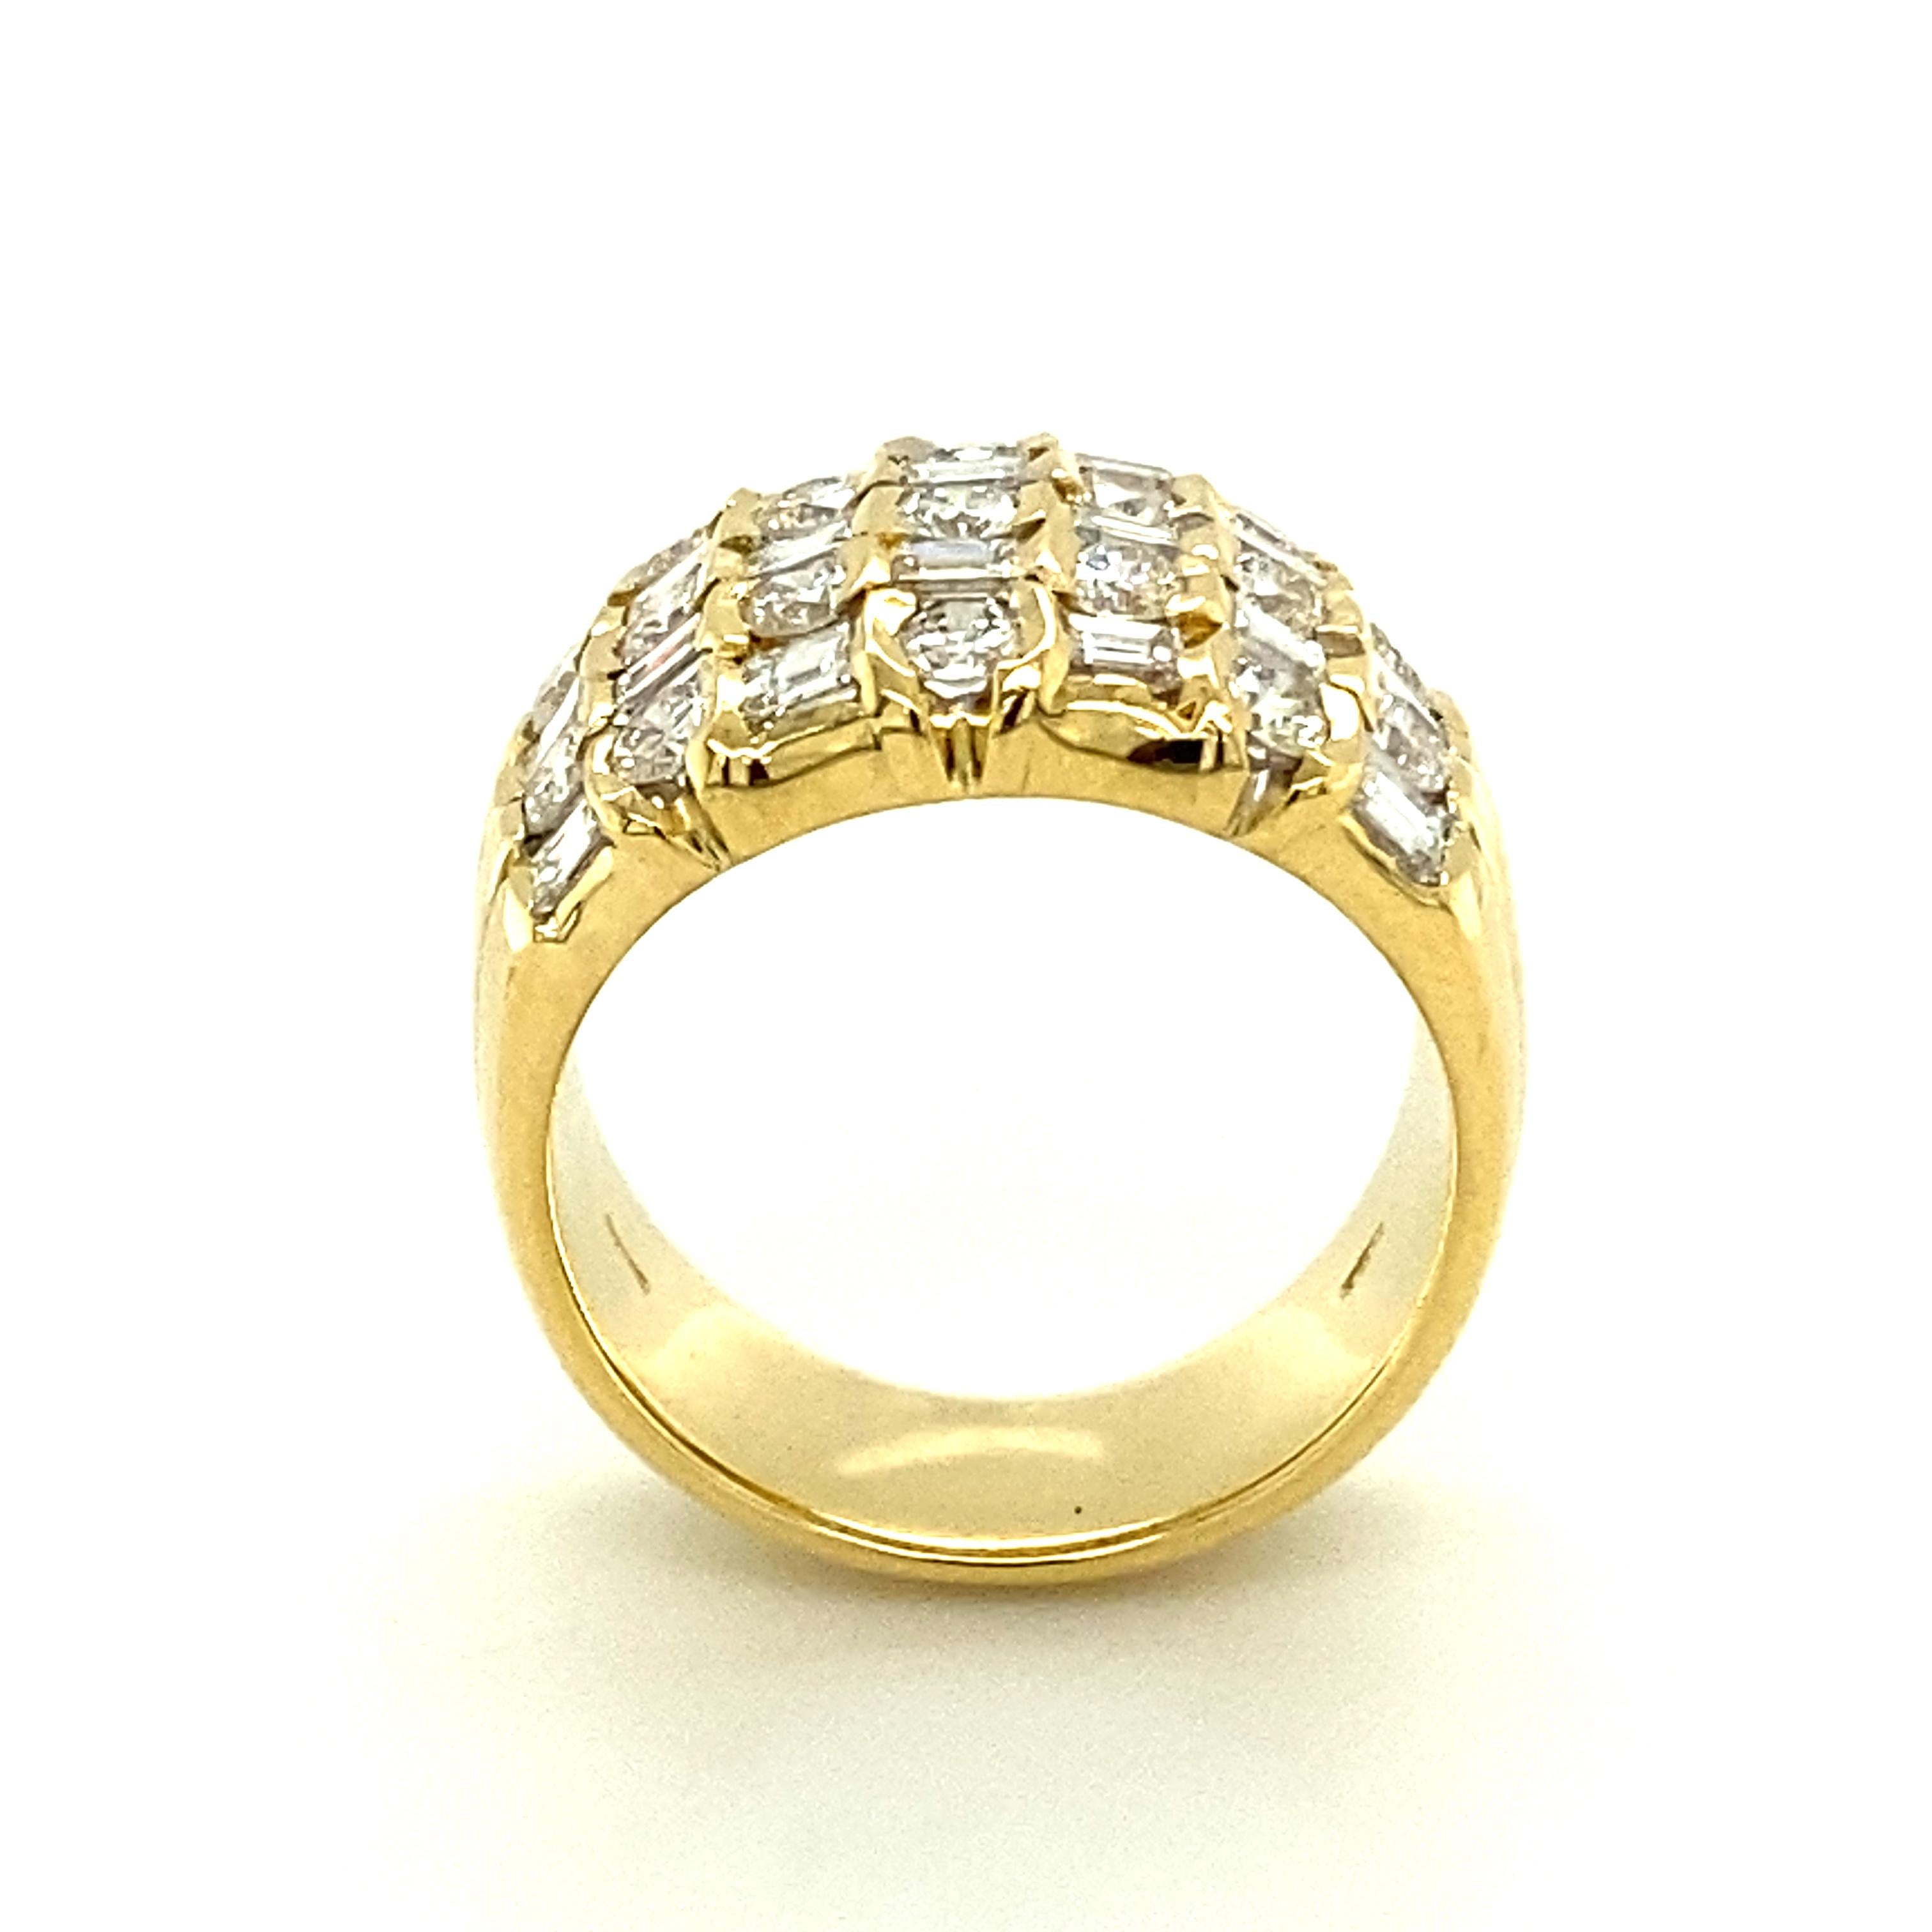 Sparkling Diamond Ring in 18 Karat Yellow Gold 1